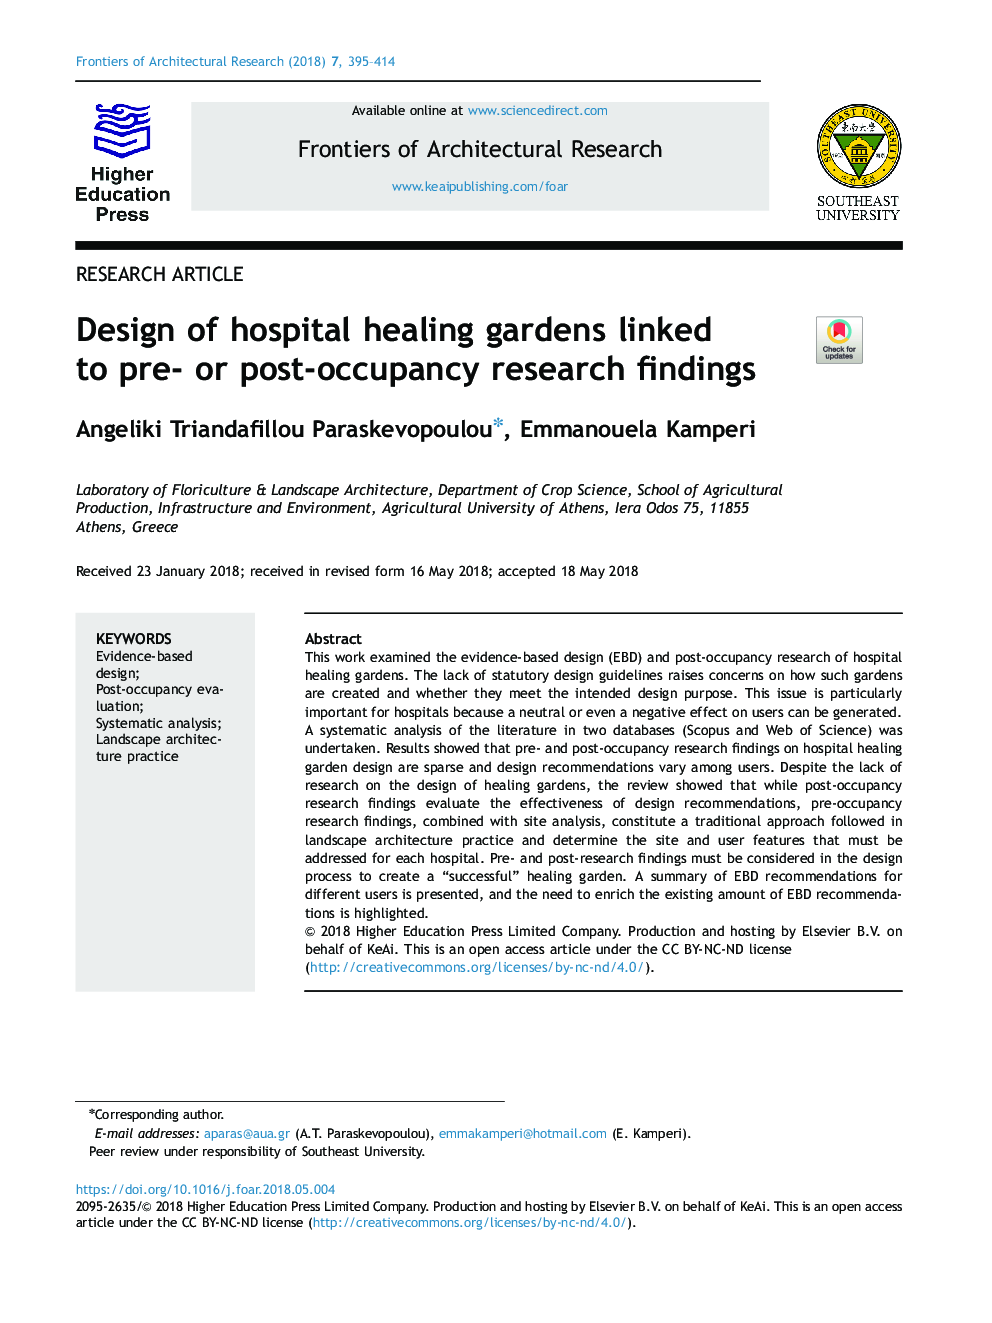 طراحی باغ های بهبودی در بیمارستان ها با یافته های پژوهش قبل یا بعد از اشغال ارتباط دارد